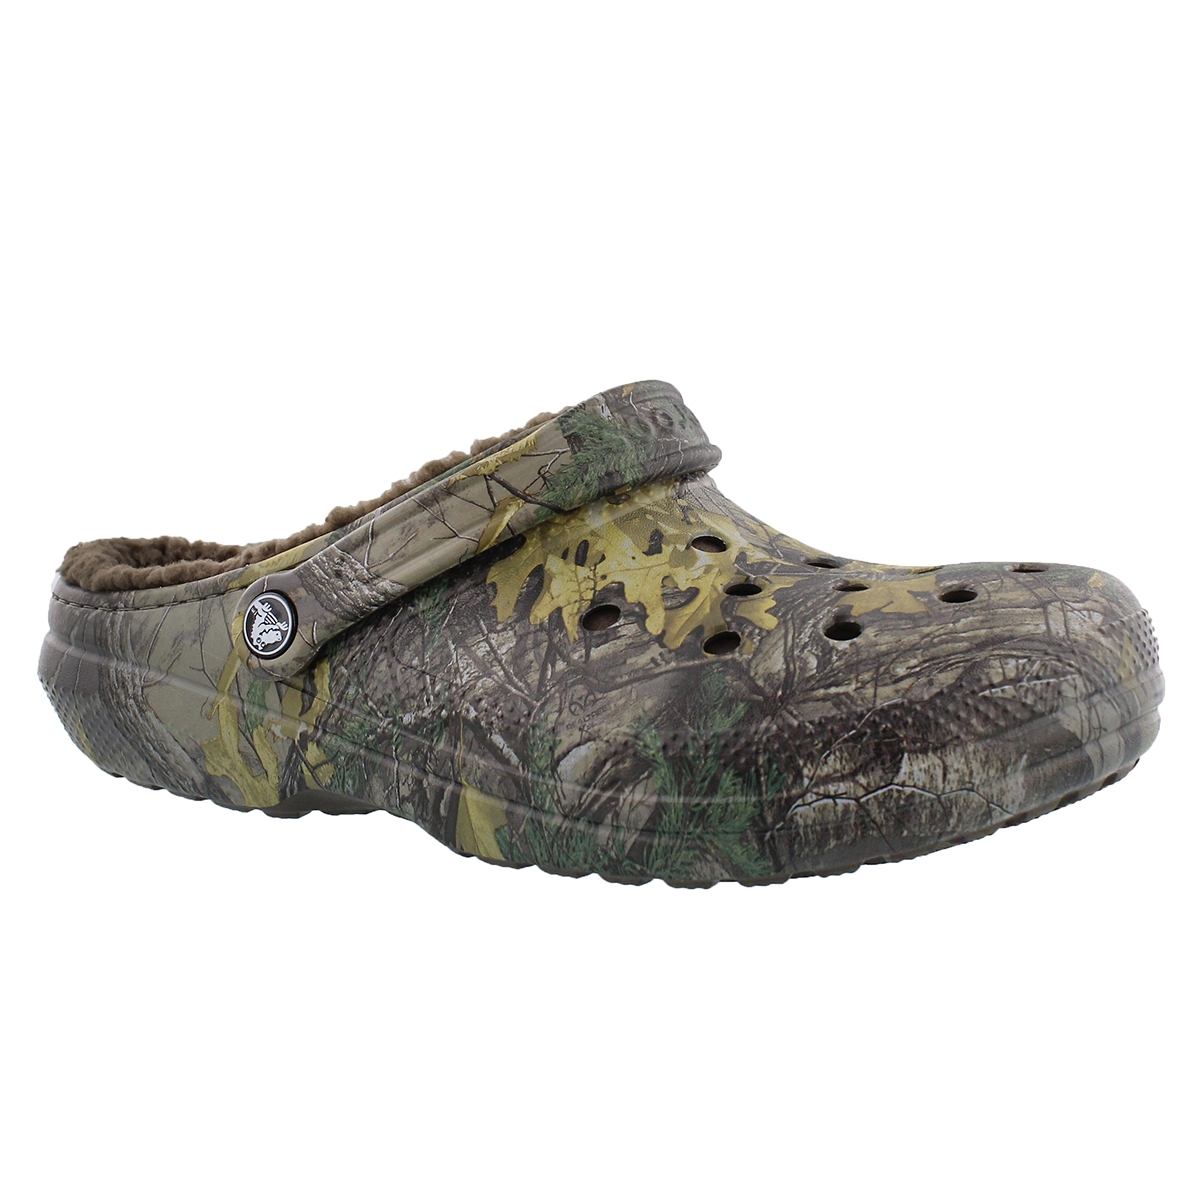 Crocs Men's Classic Lined Comfort Clog | eBay